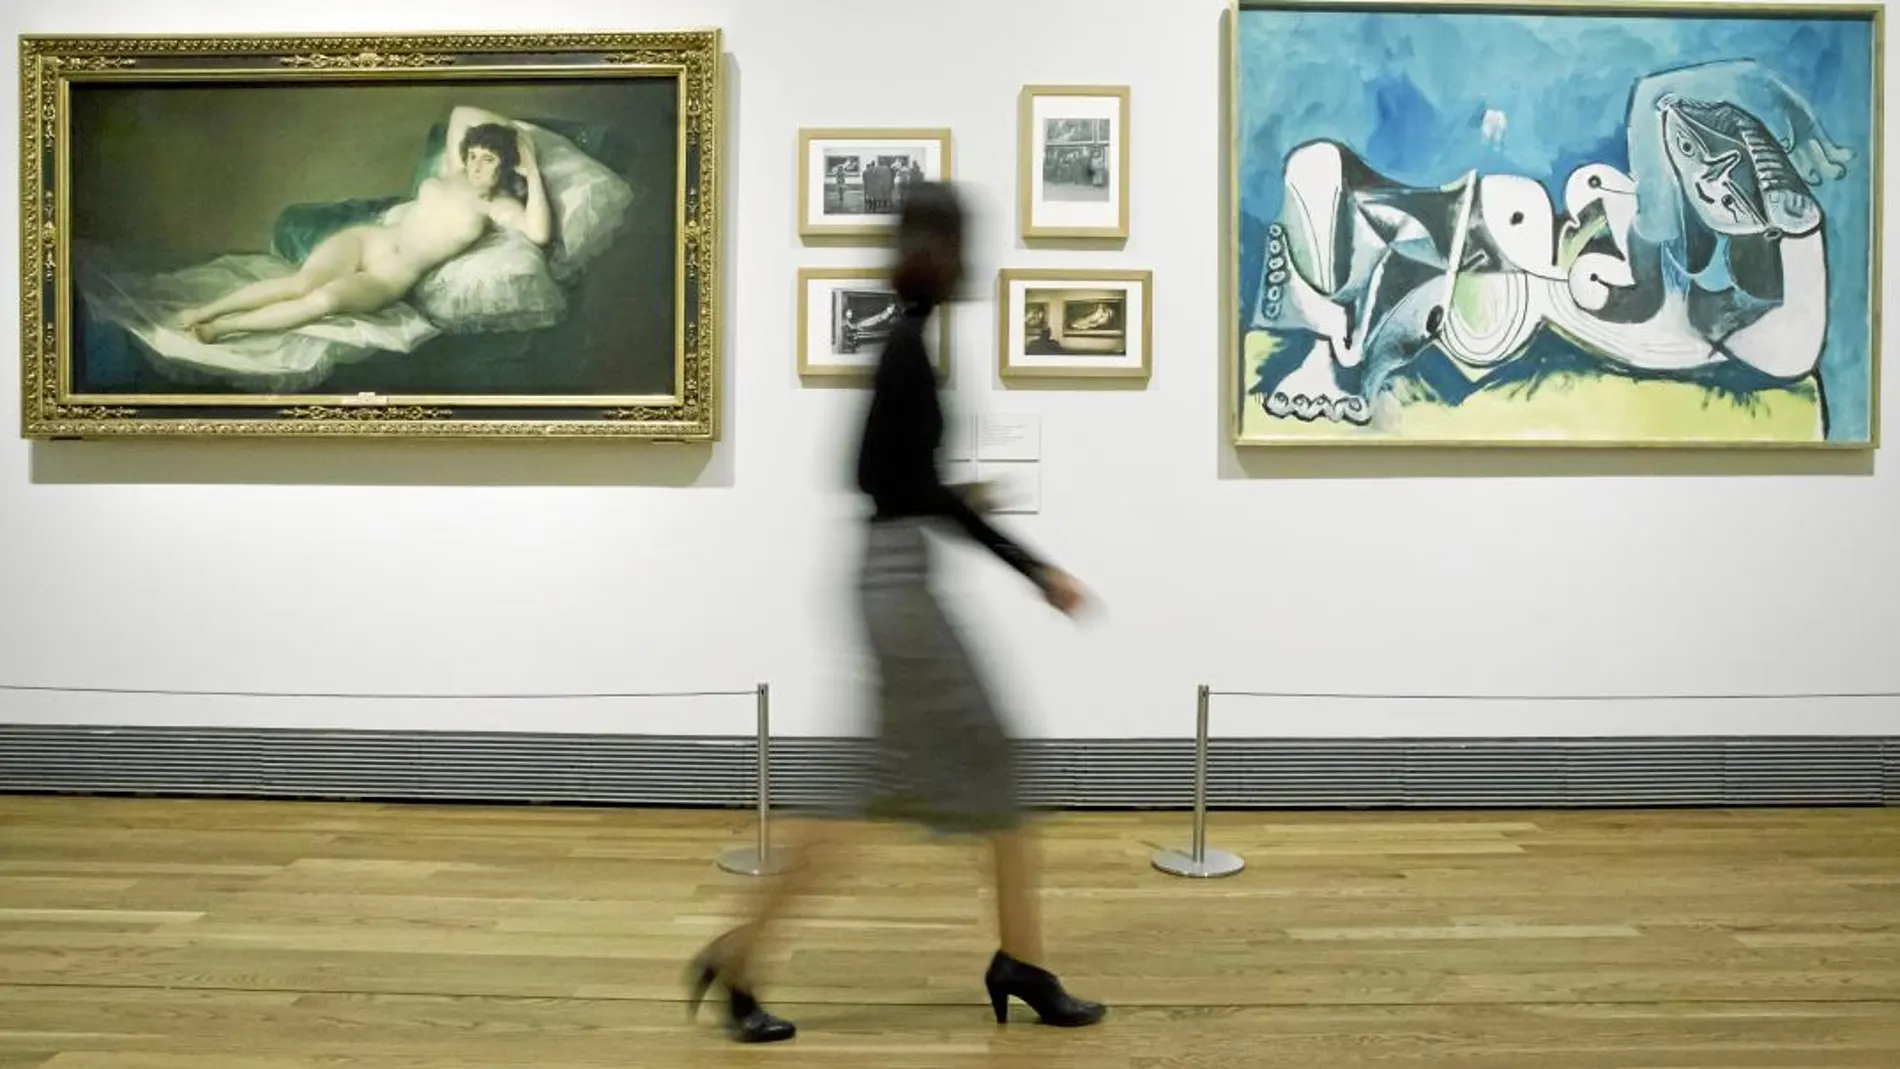 La «Maja desnuda», de Goya, junto a la interpretación y la mirada moderna que Picasso hizo sobre esa obra